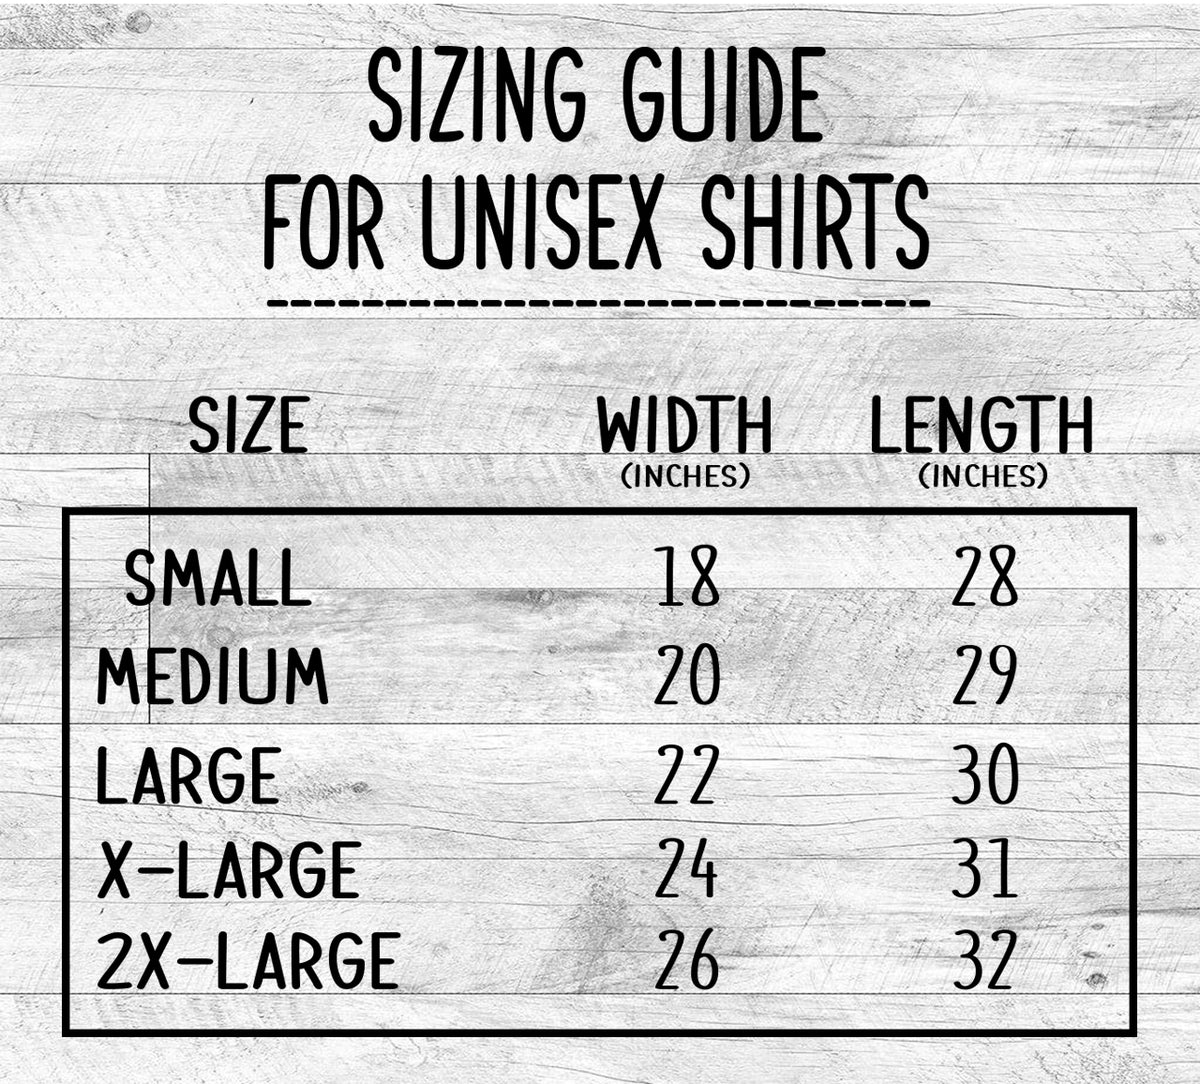 Gigi Heart - Unisex T-shirt - Gigi Shirt - Gift For New Gigi - familyteeprints